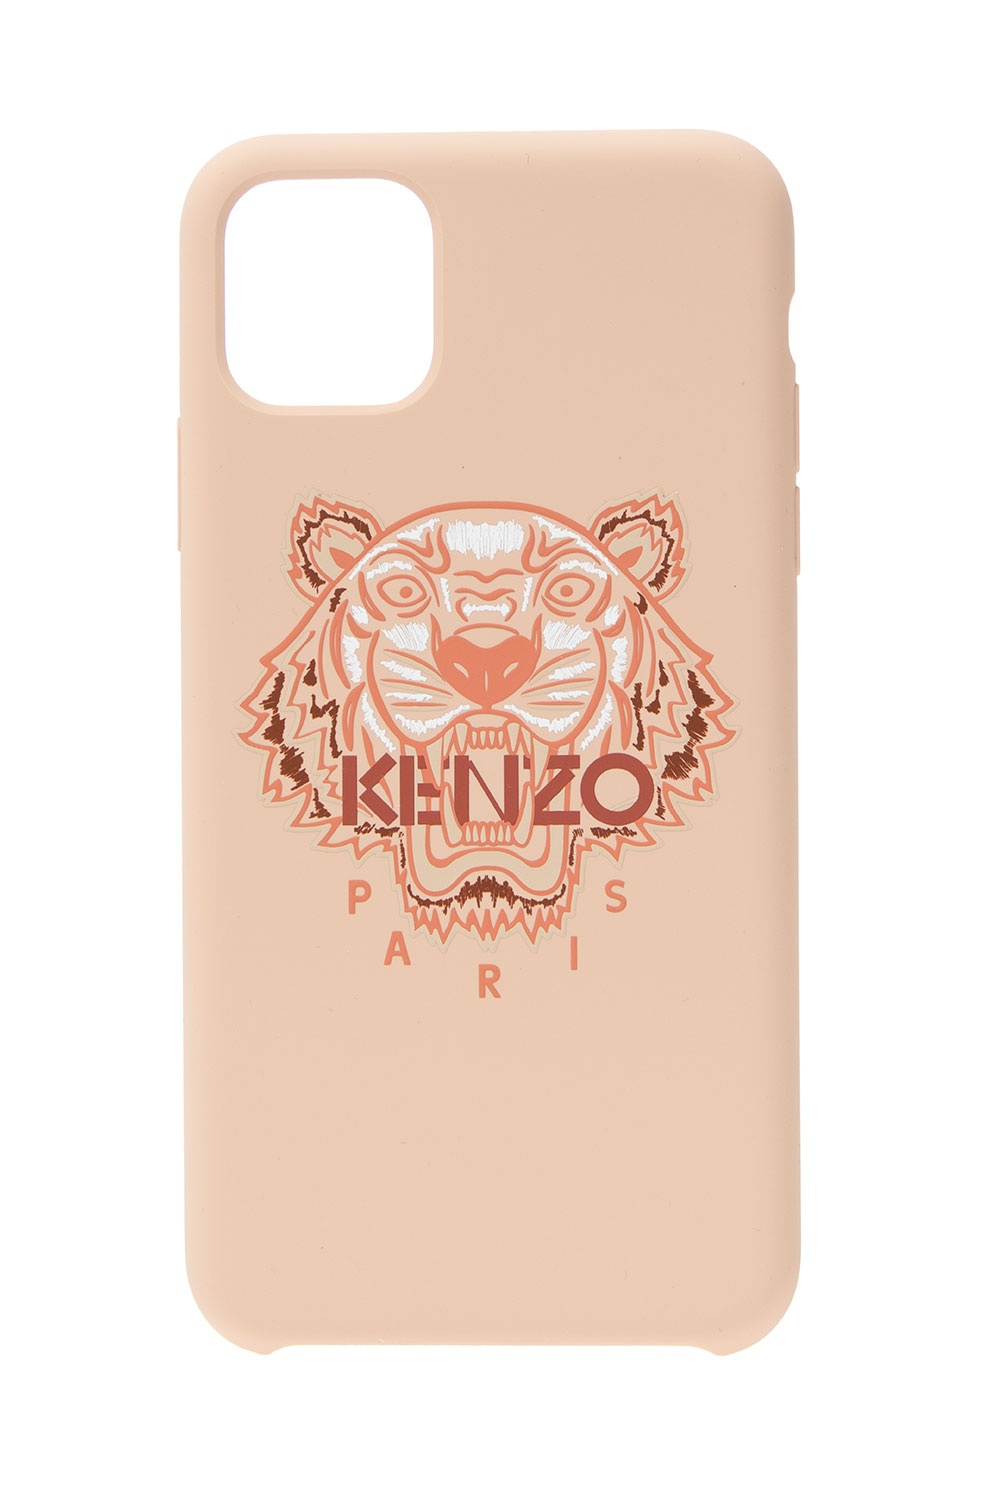 kenzo iphone case